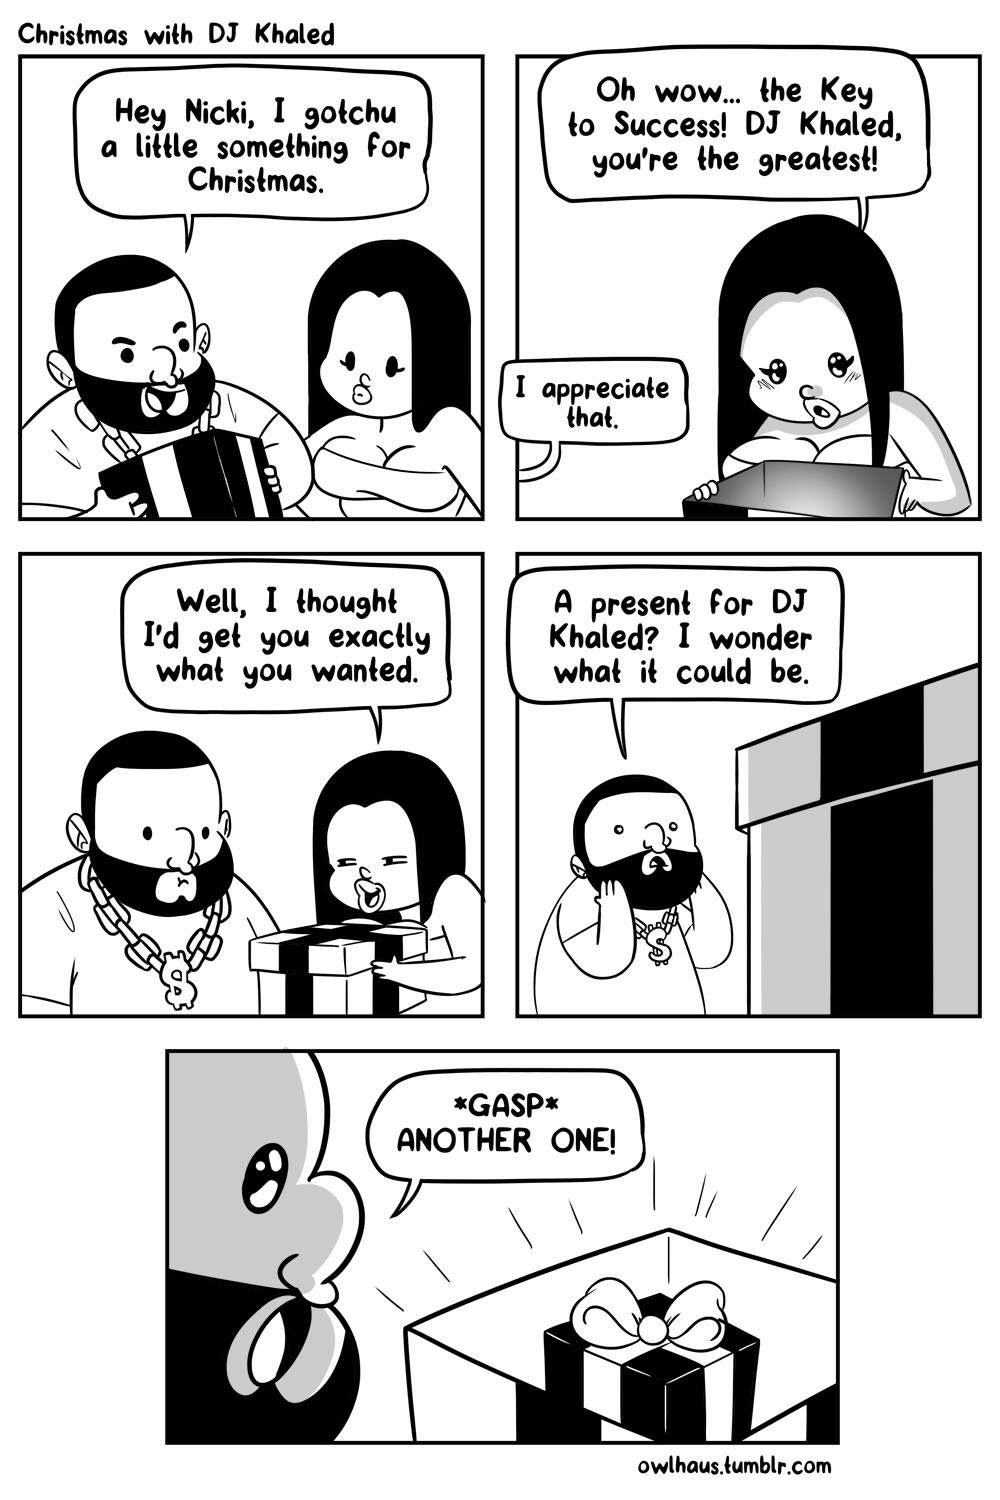 What's DJ Khaleds favorite number?